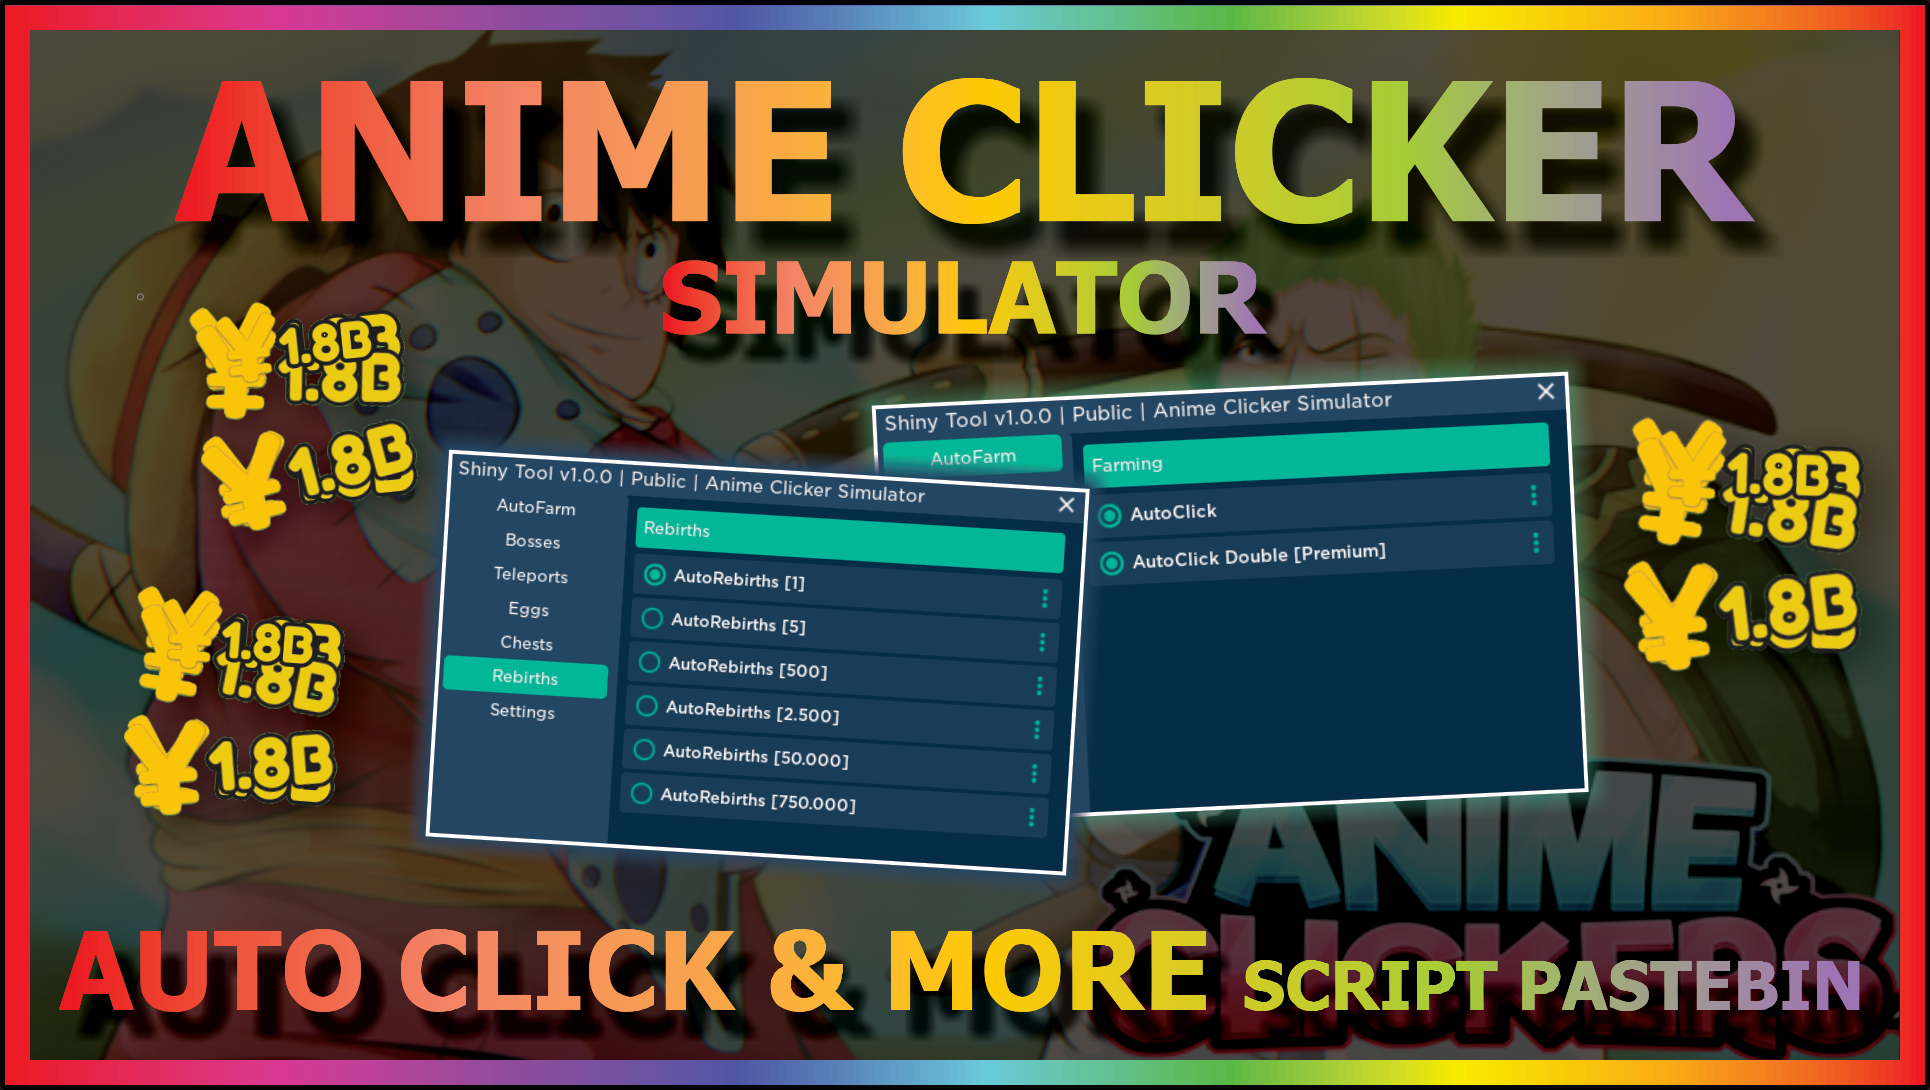 Roblox Anime Clicker Simulator Codes